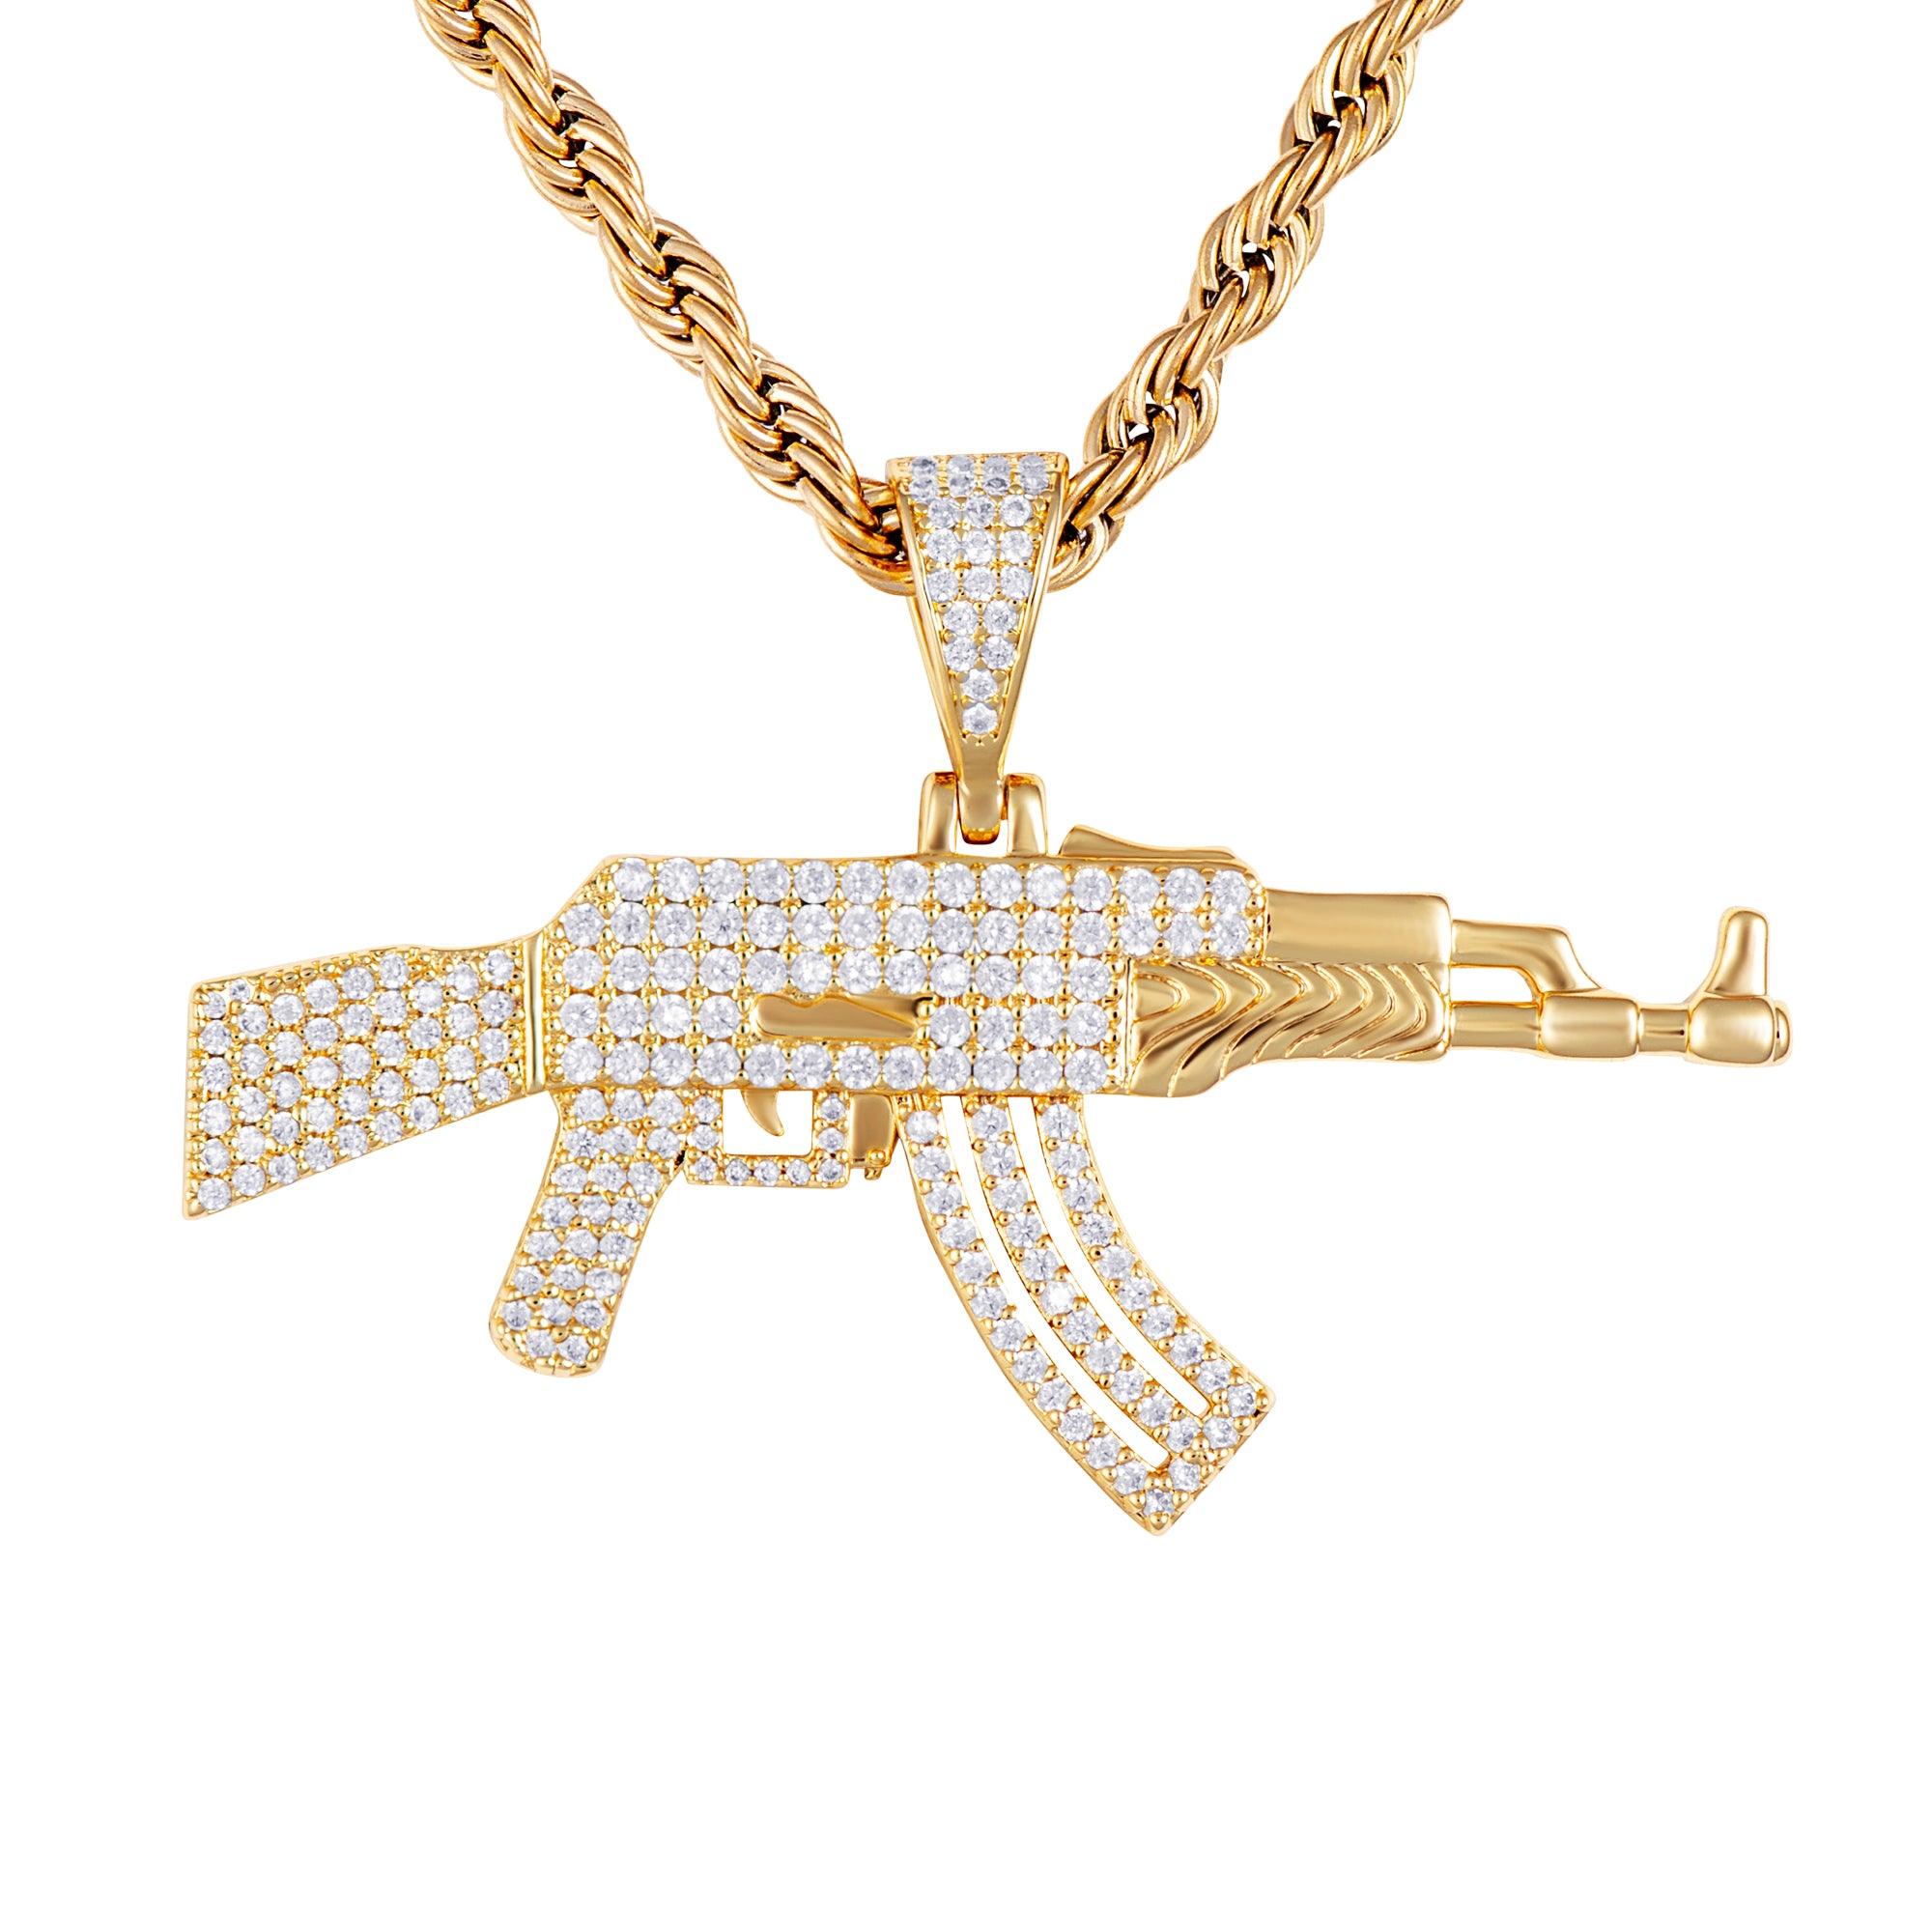 AK-47 Gun Pendant Gold